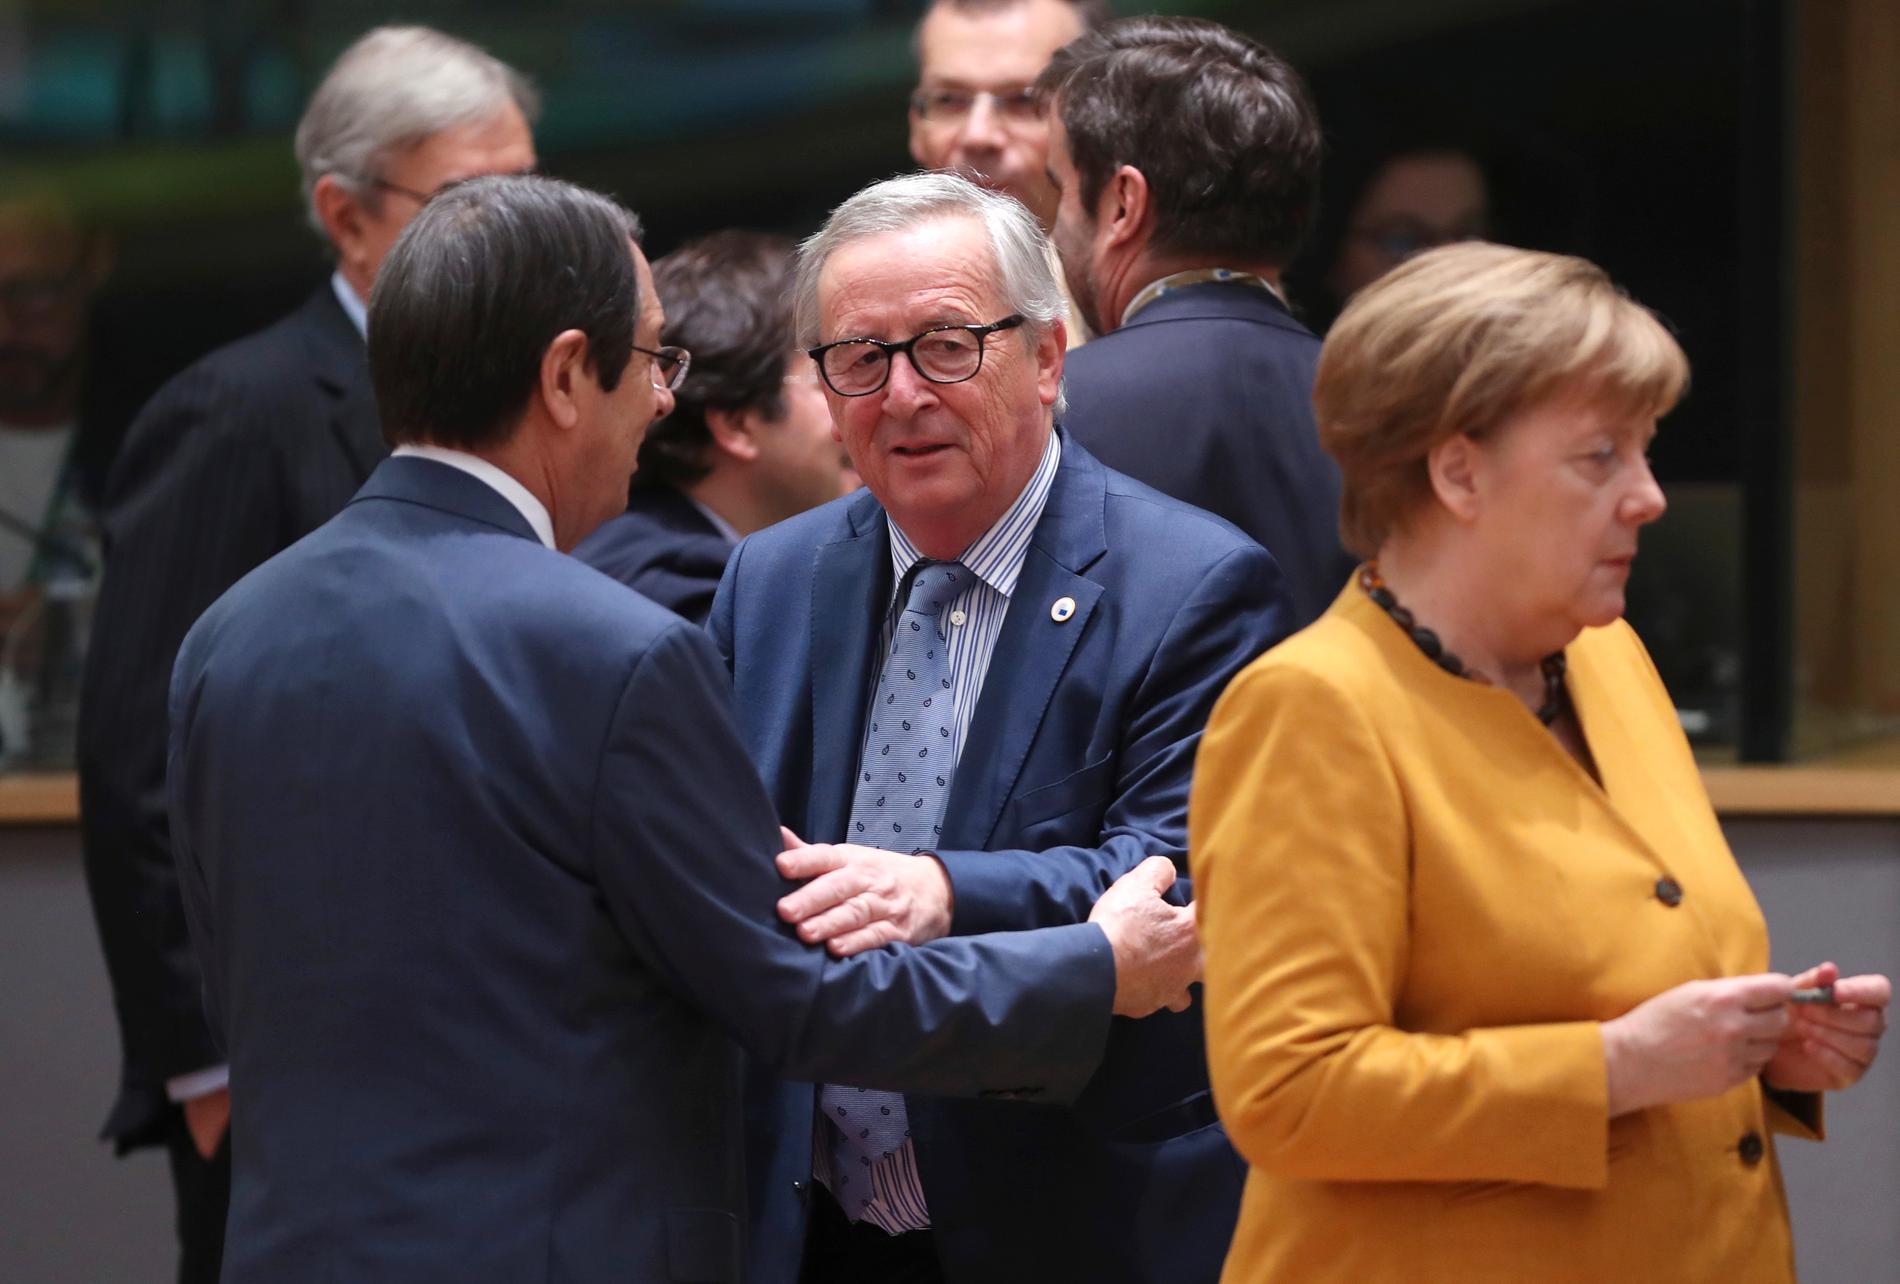 Kina är huvudämne vid det fortsatta EU-toppmöte i Bryssel för bland andra Cyperns president Nicos Anastasiades, EU-kommissionens ordförande Jean-Claude Juncker och Tysklands förbundskansler Angela Merkel.